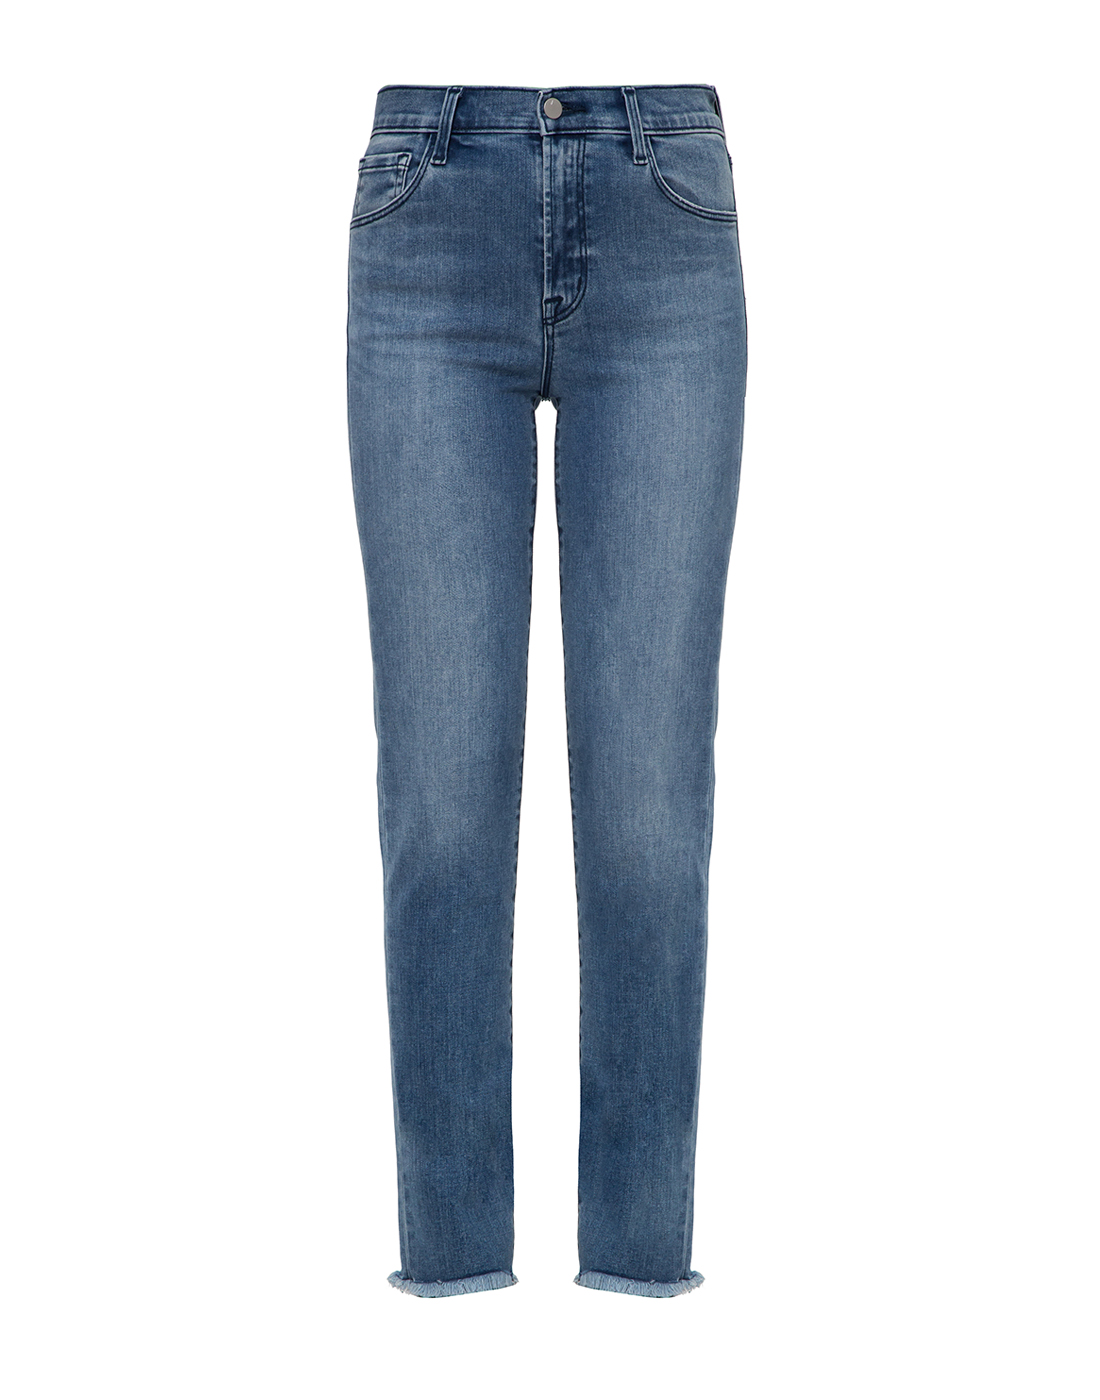 Женские голубые джинсы J BRAND SJB001977-1